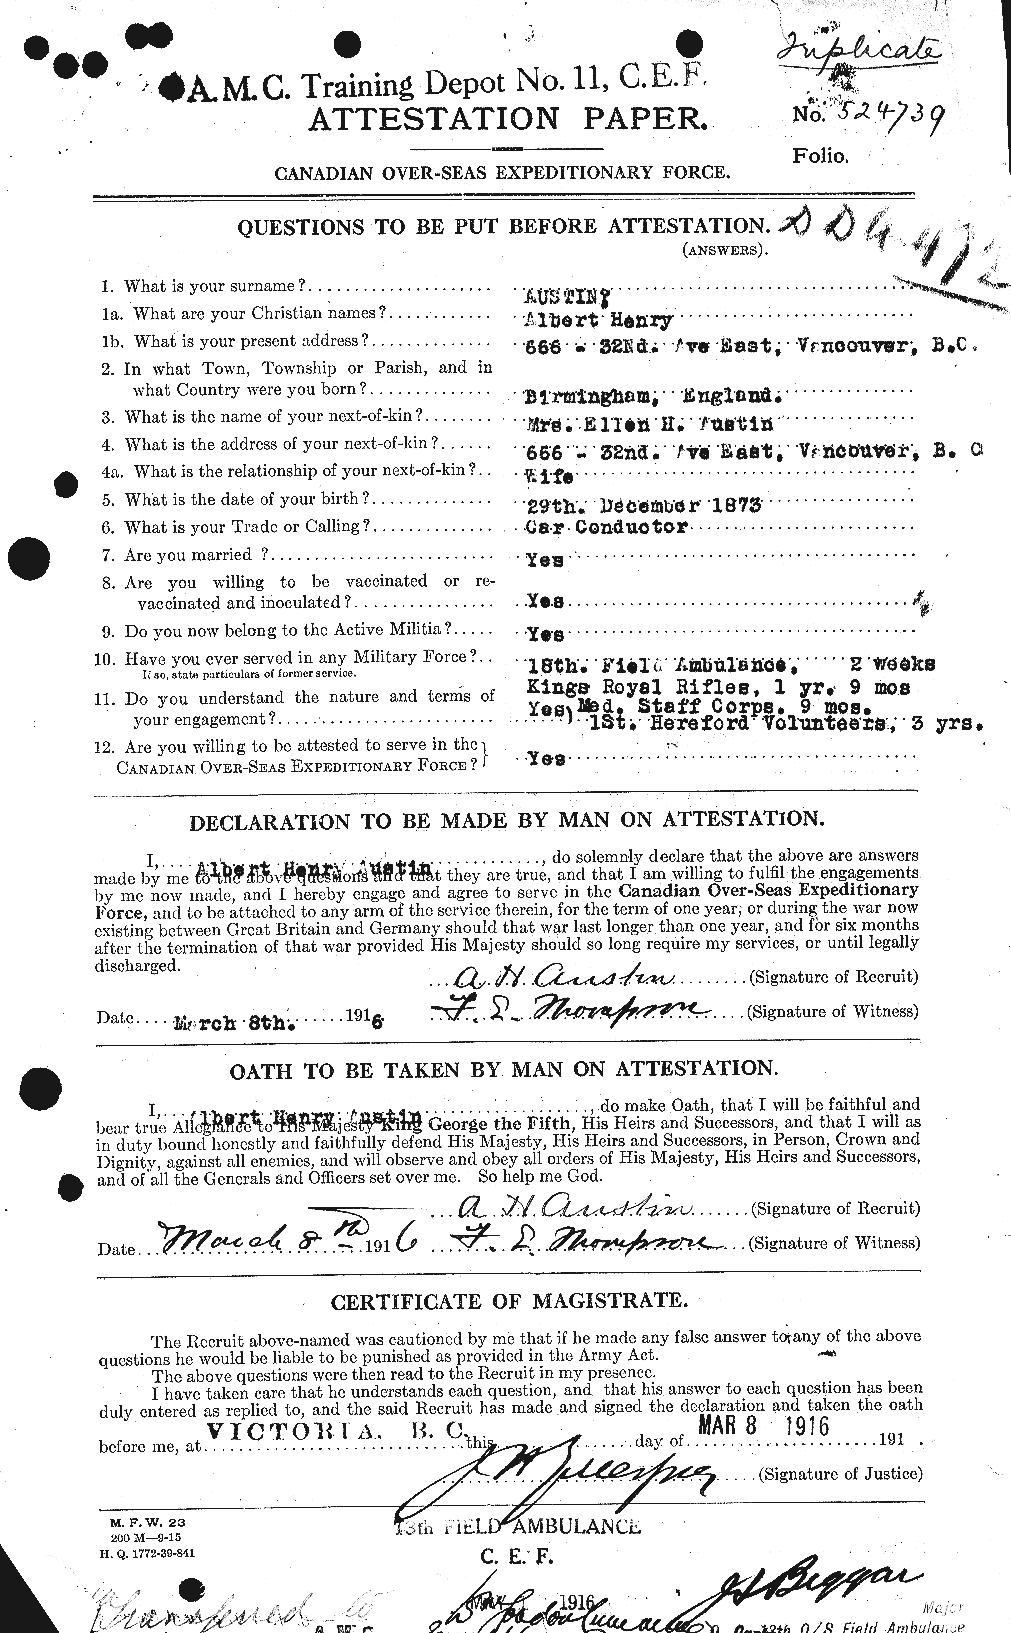 Dossiers du Personnel de la Première Guerre mondiale - CEC 215474a